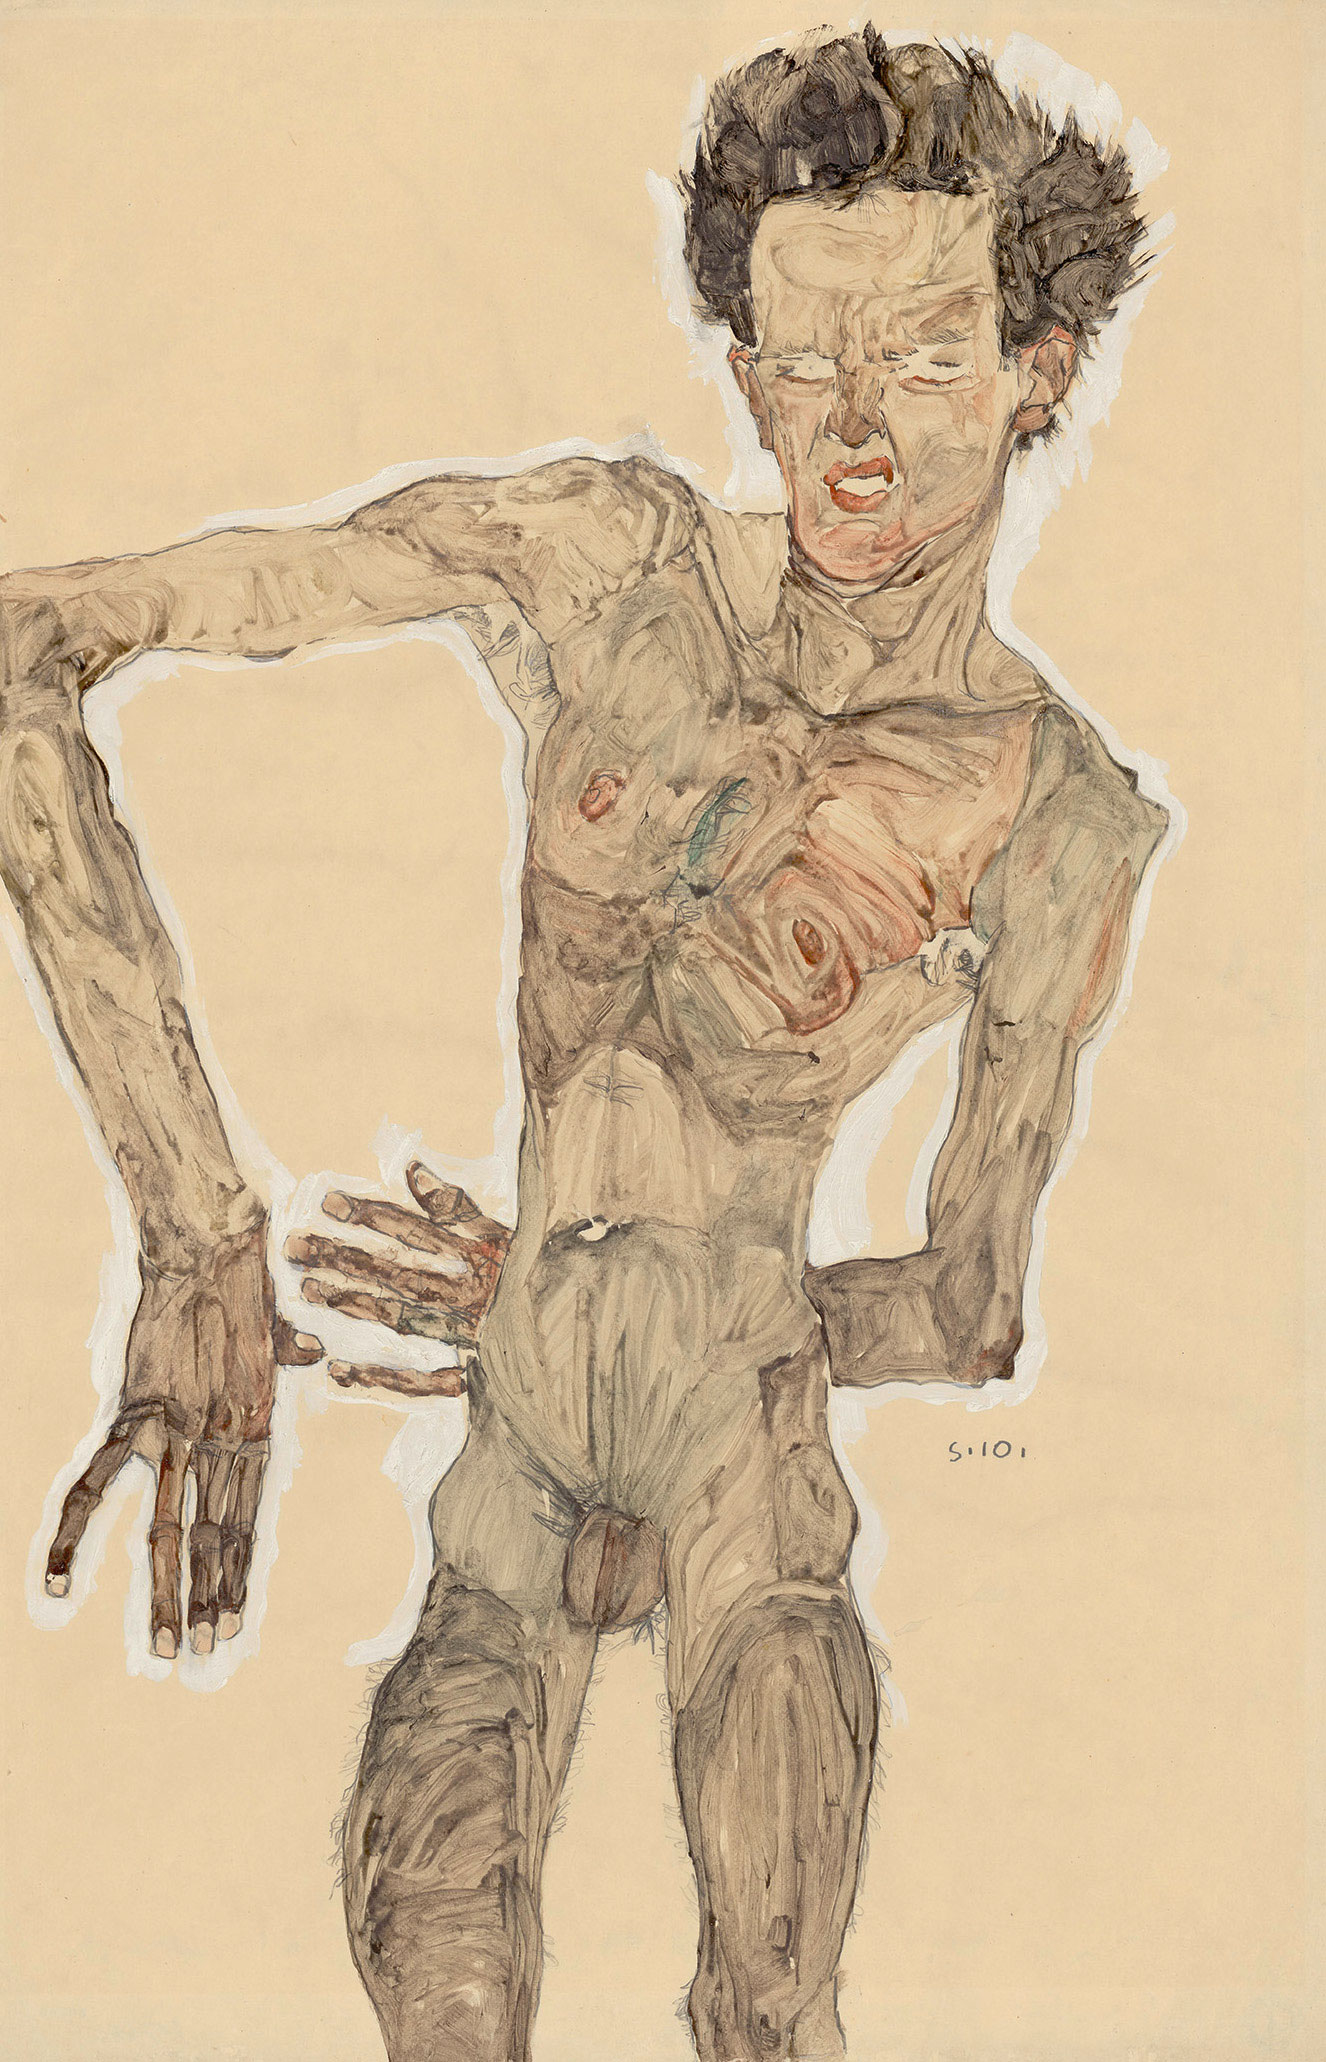 Egon Schiele: Grimacing nude self-portrait, 1910